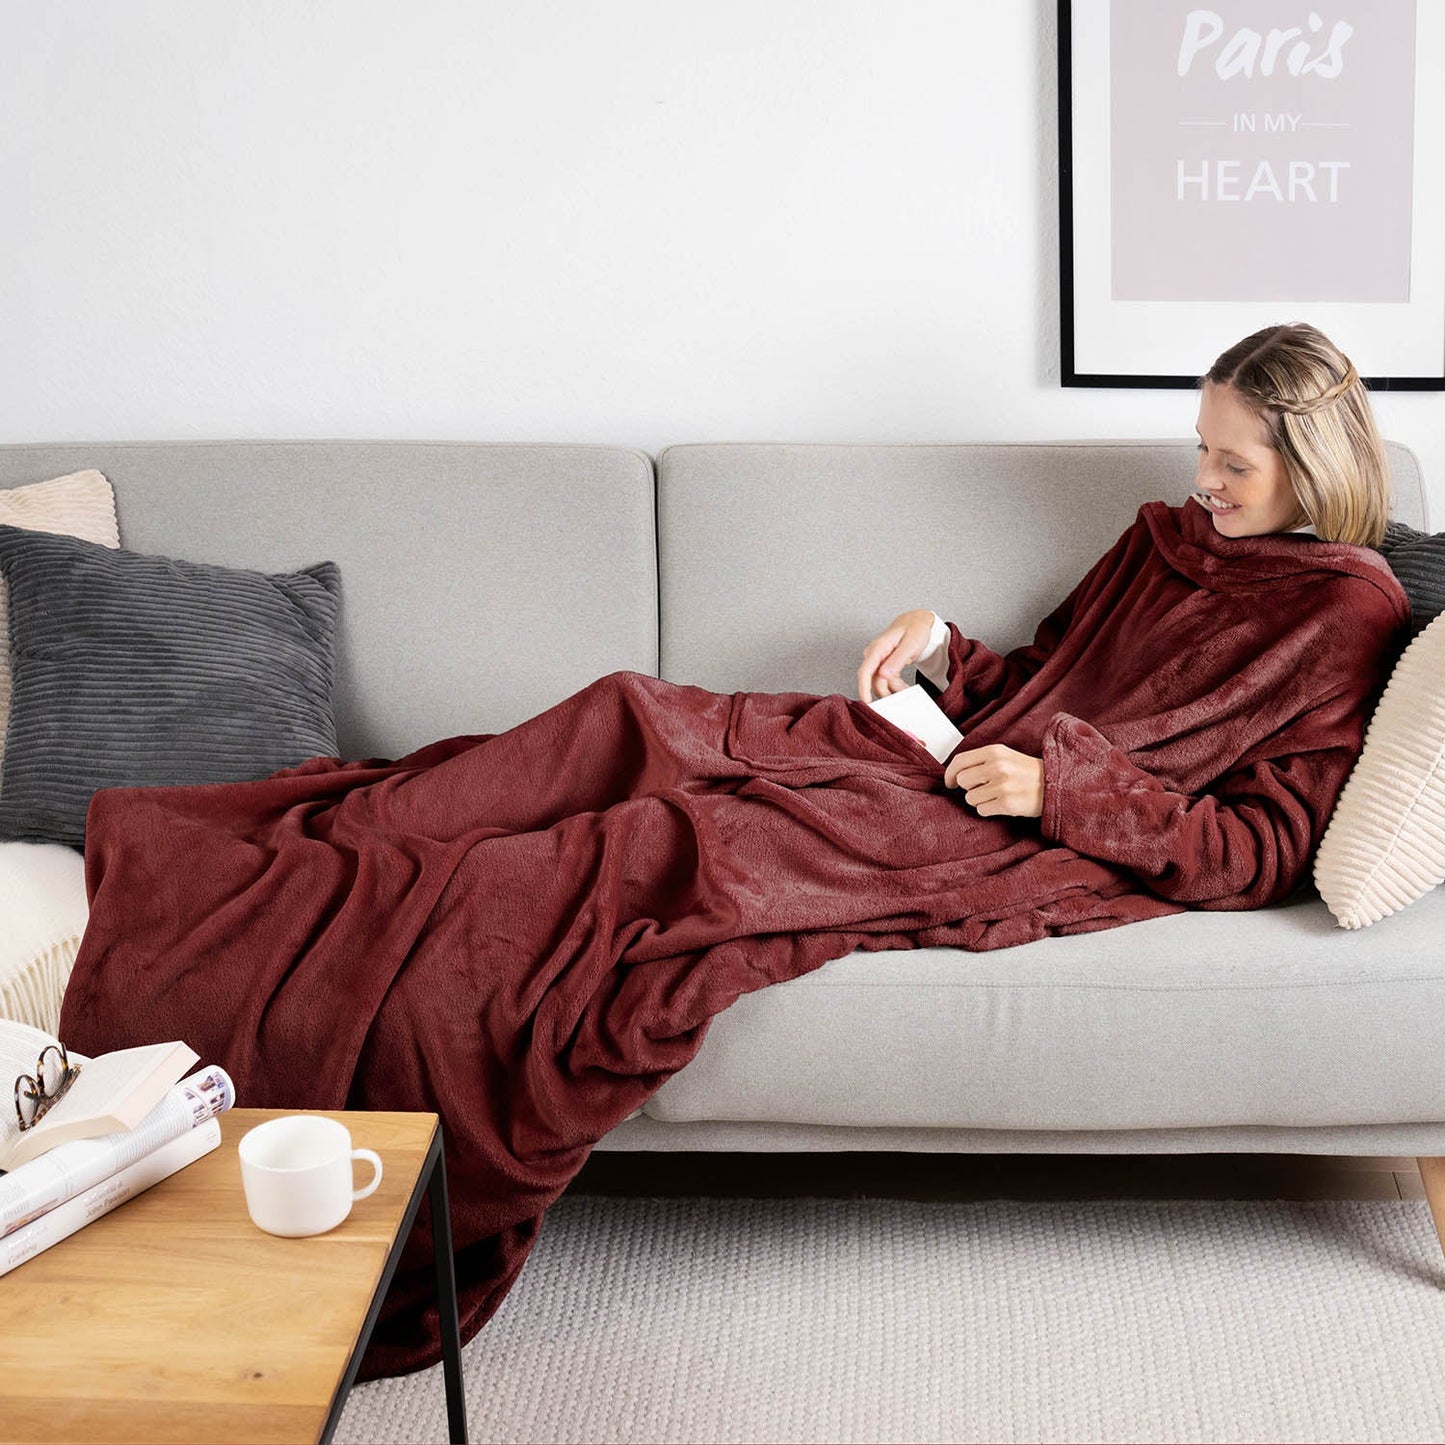 Frau liegt auf einem grauen Sofa eingehüllt in ein dunkelroten flauschiges Kleidungsstück und liest ein Buch mit einer Tasse auf einem Holztisch daneben.